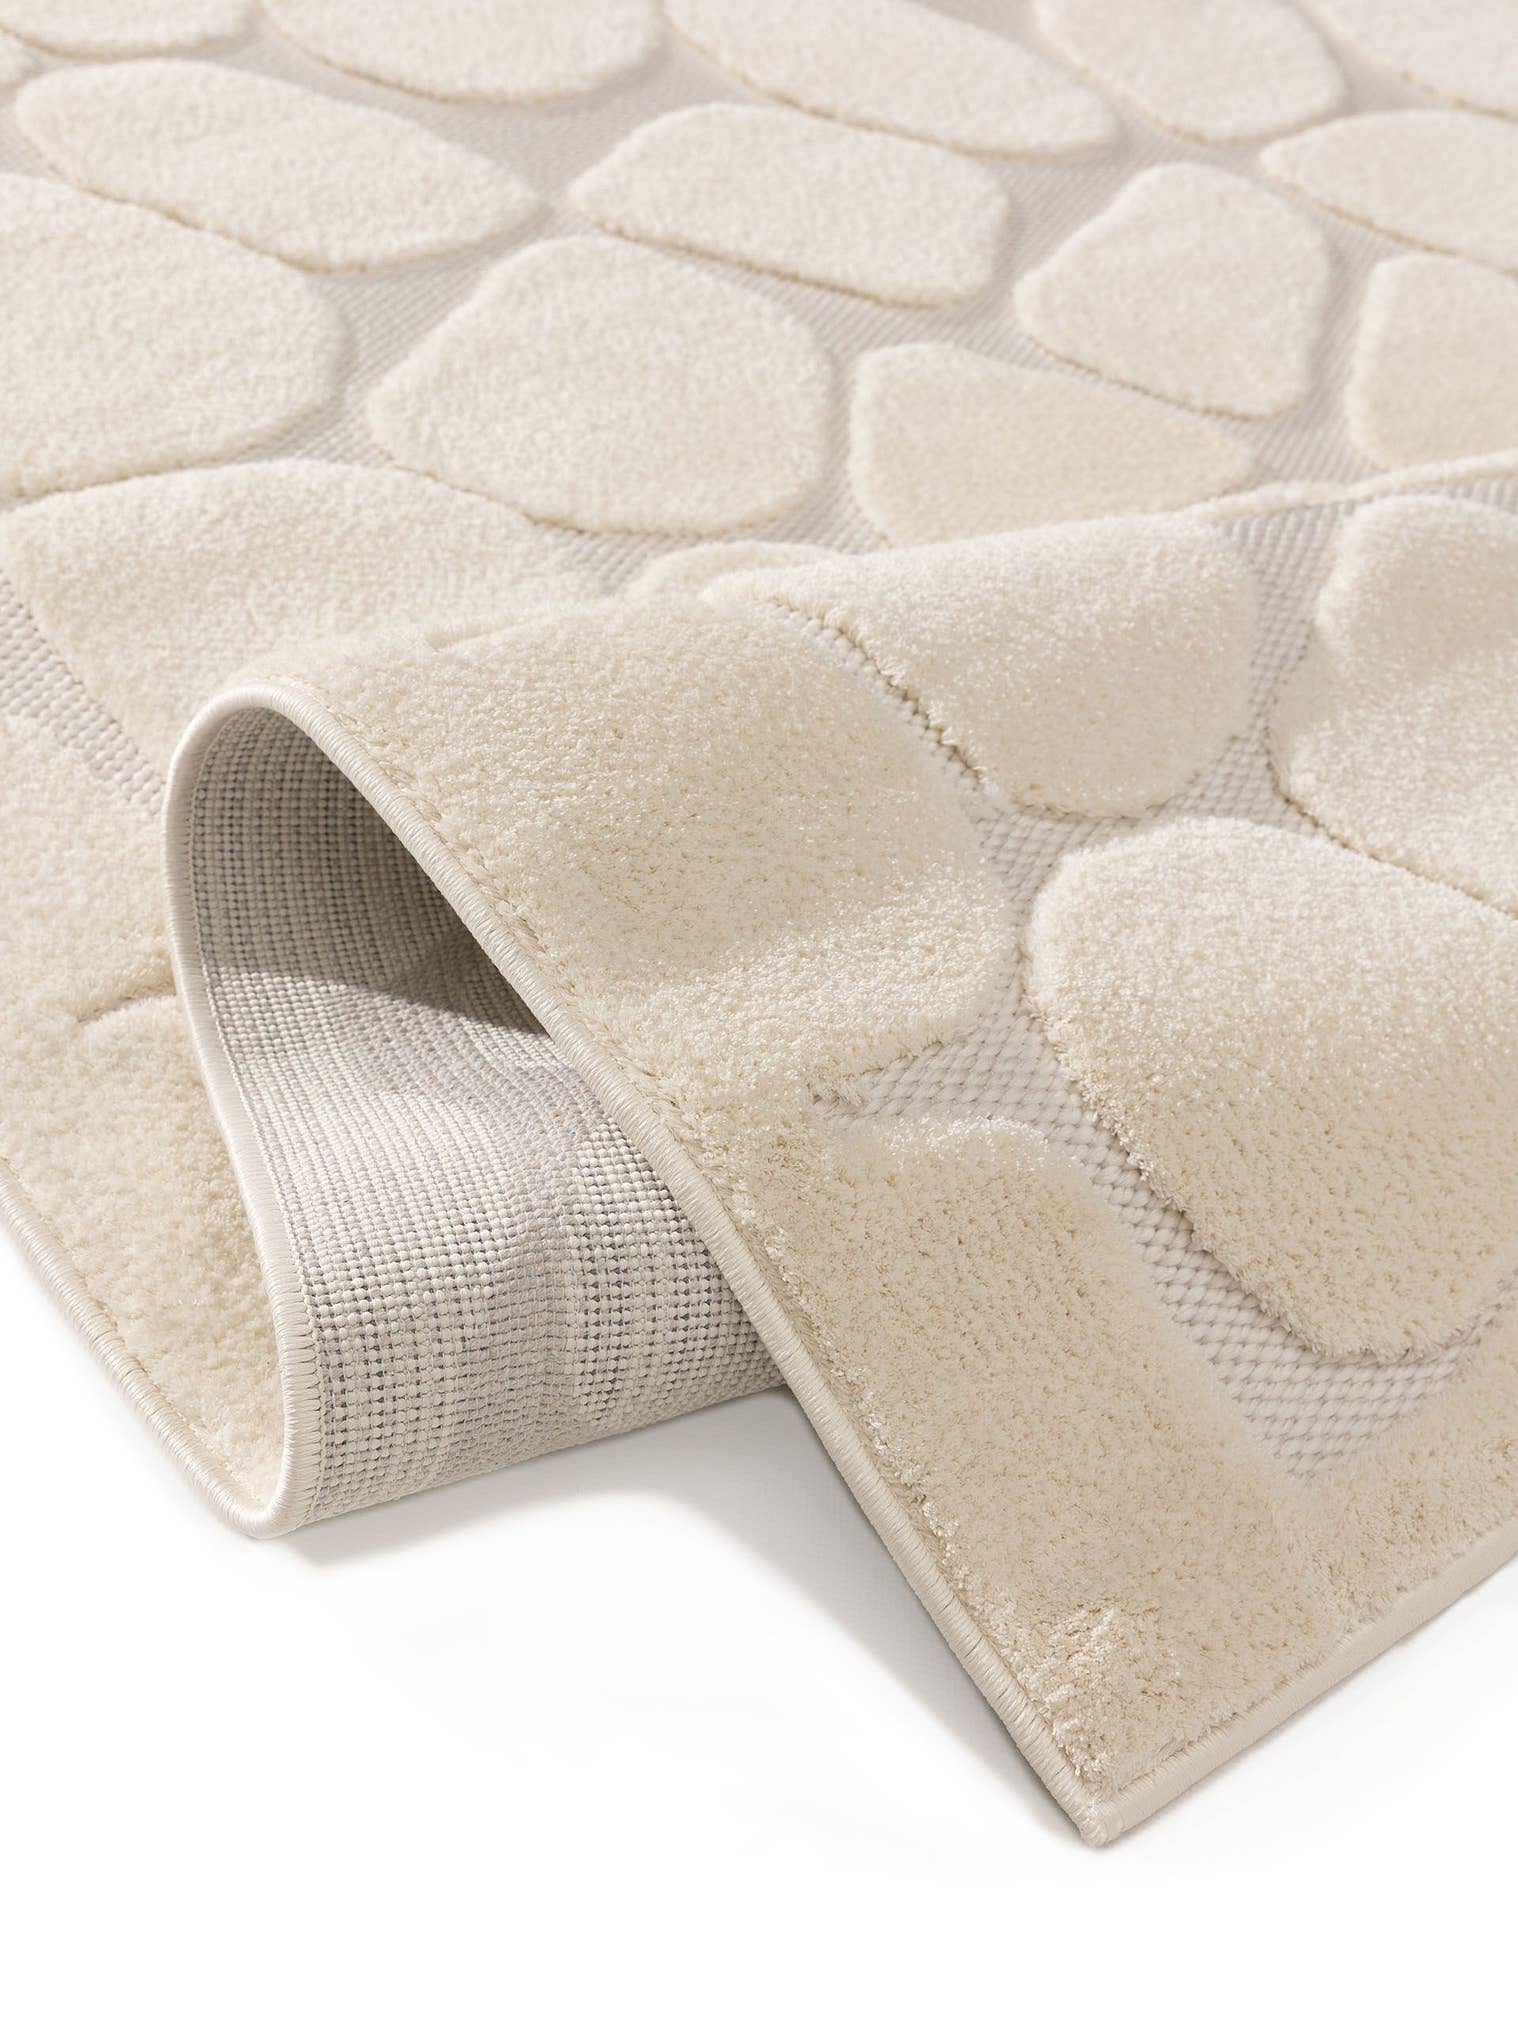 Teppich aus 100% Polyester (Mikrofaser) in Weiß mit 11 bis 20 mm hohem Flor von benuta Pop